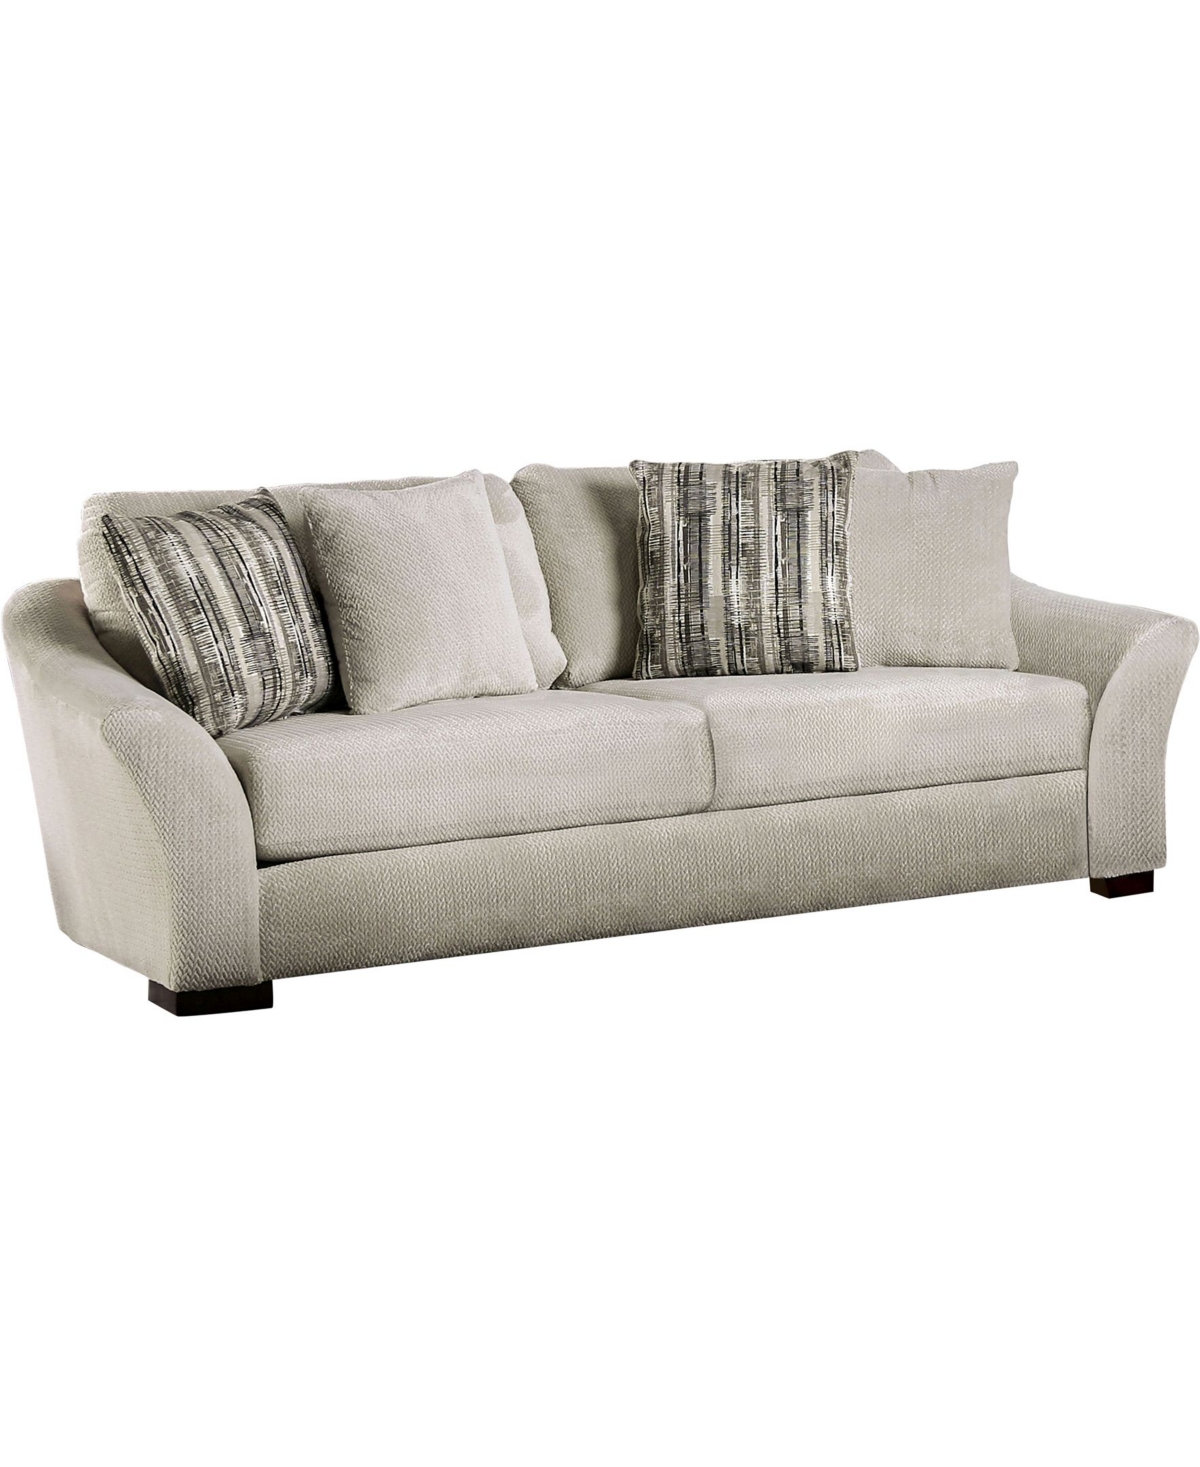 of America Edren Upholstered Sofa